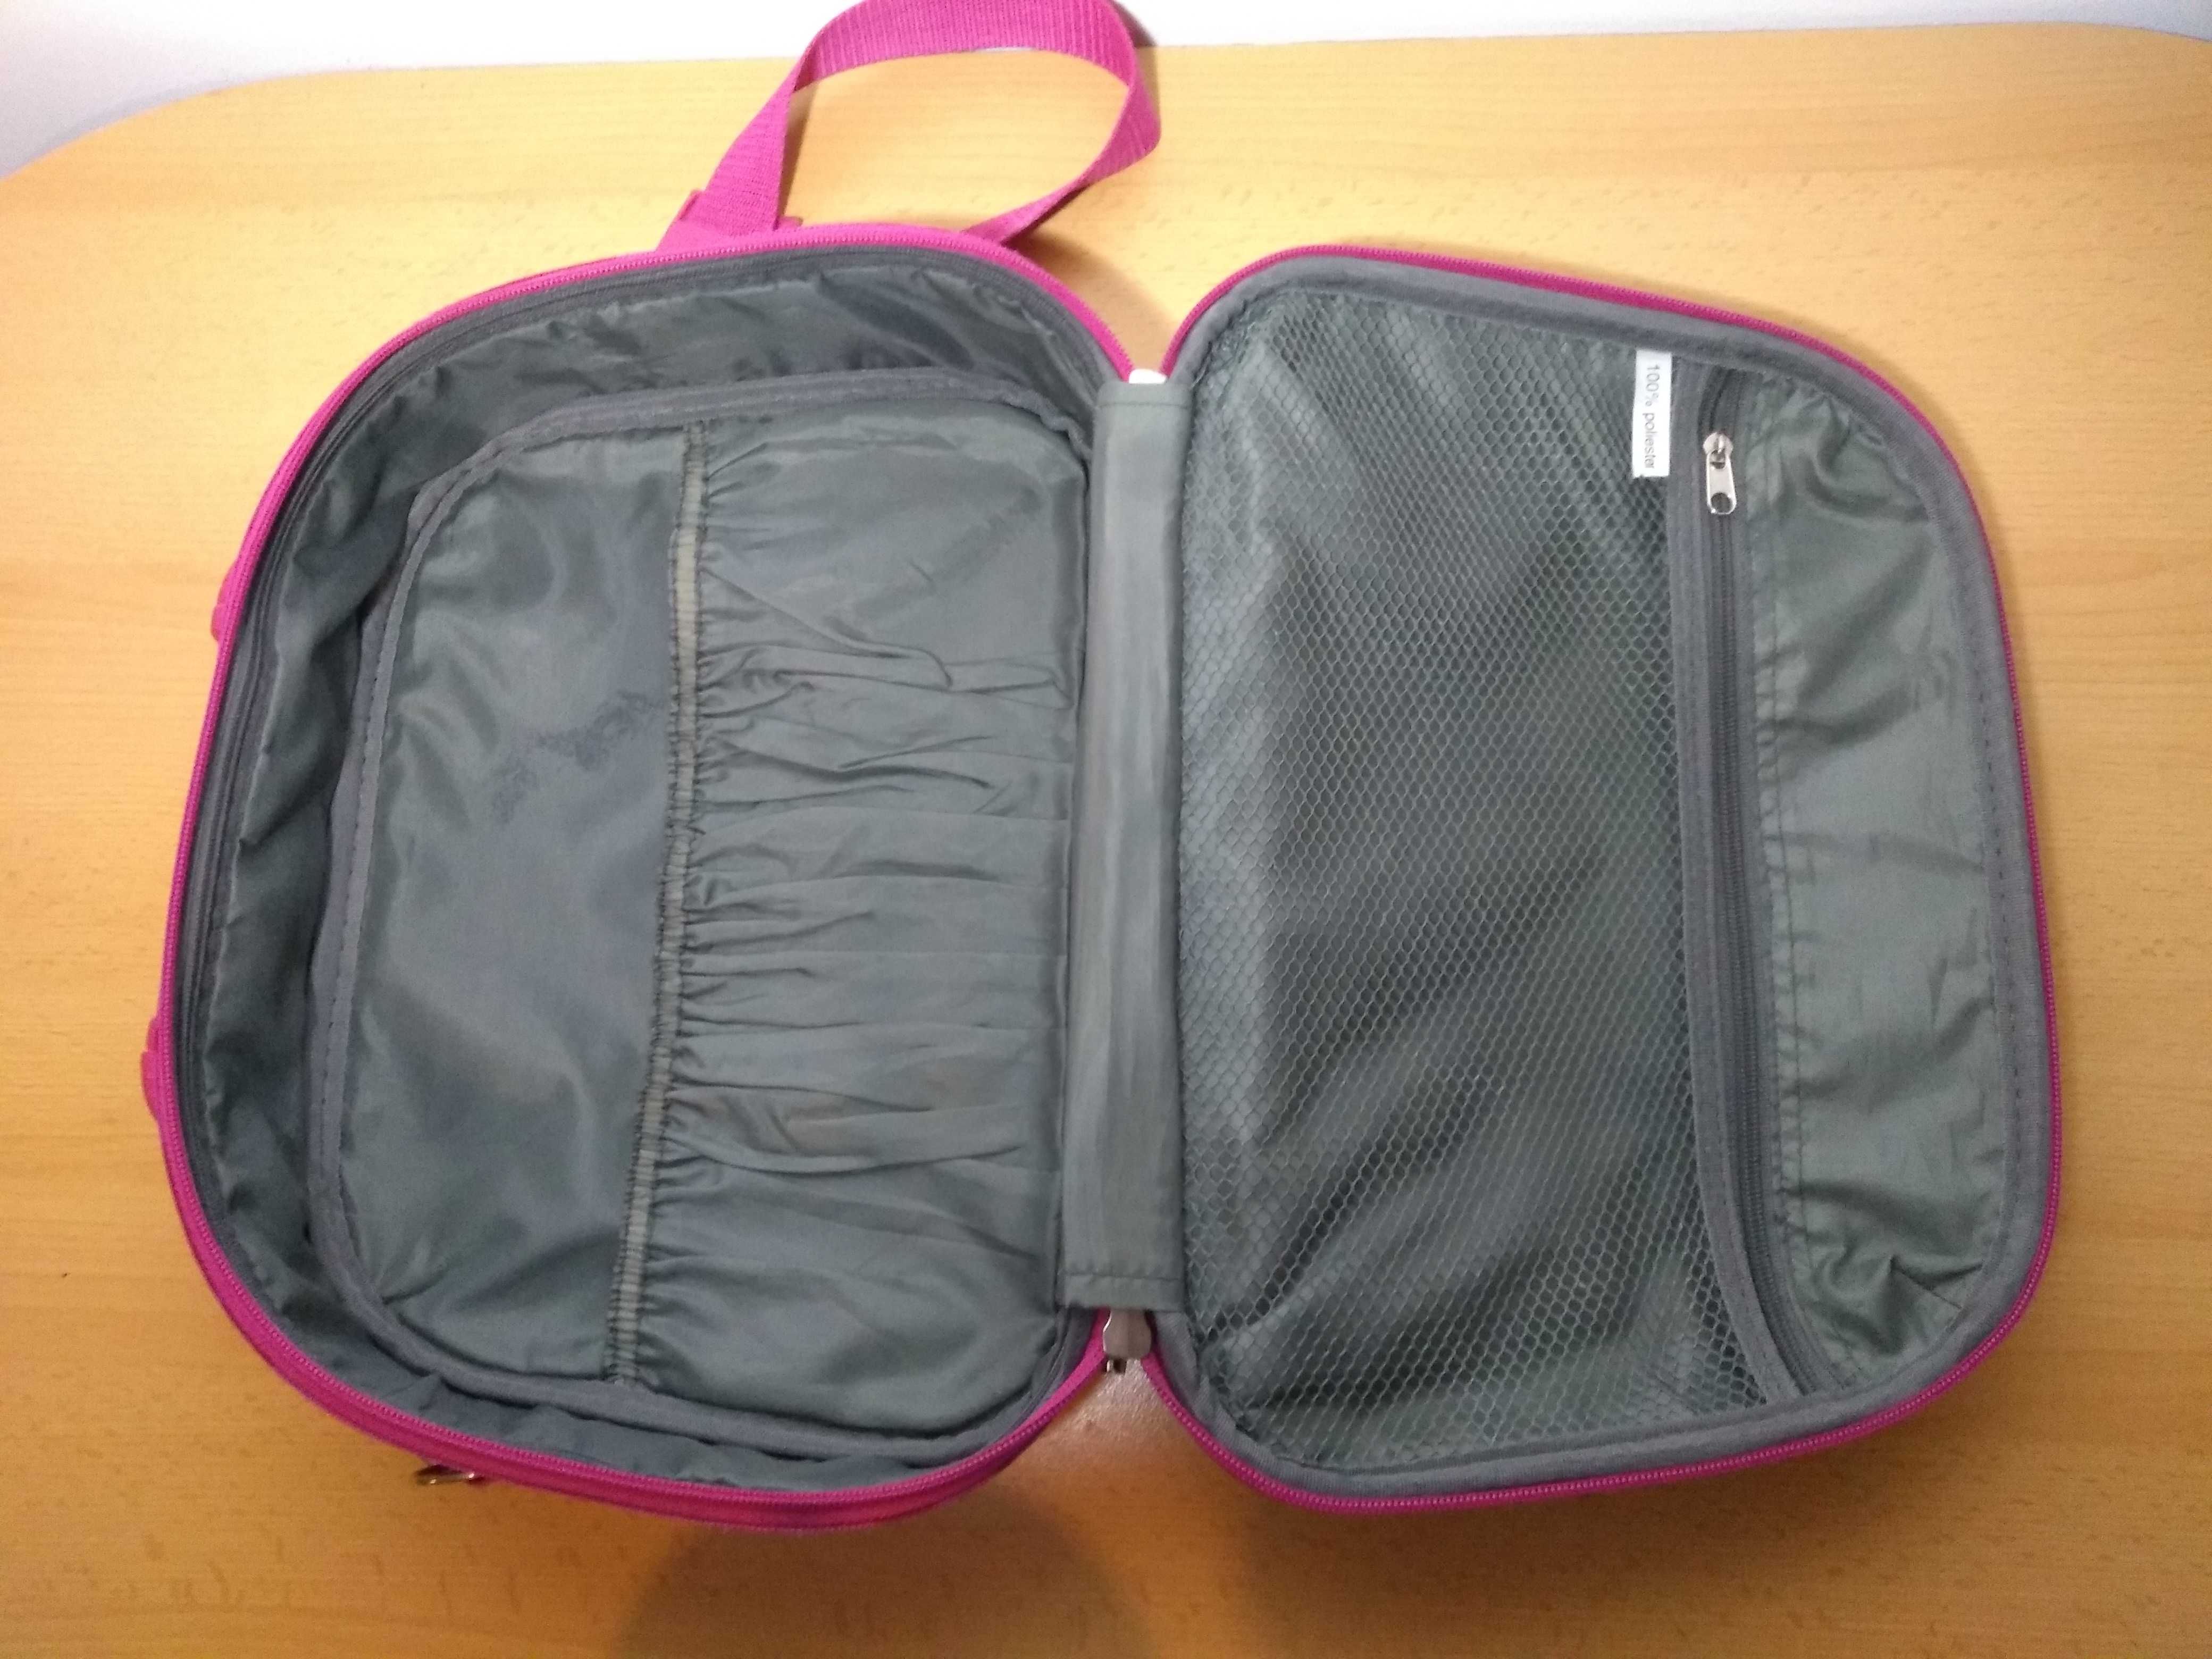 Damska torba torebka na ramię kuferek 35x25x10 cm